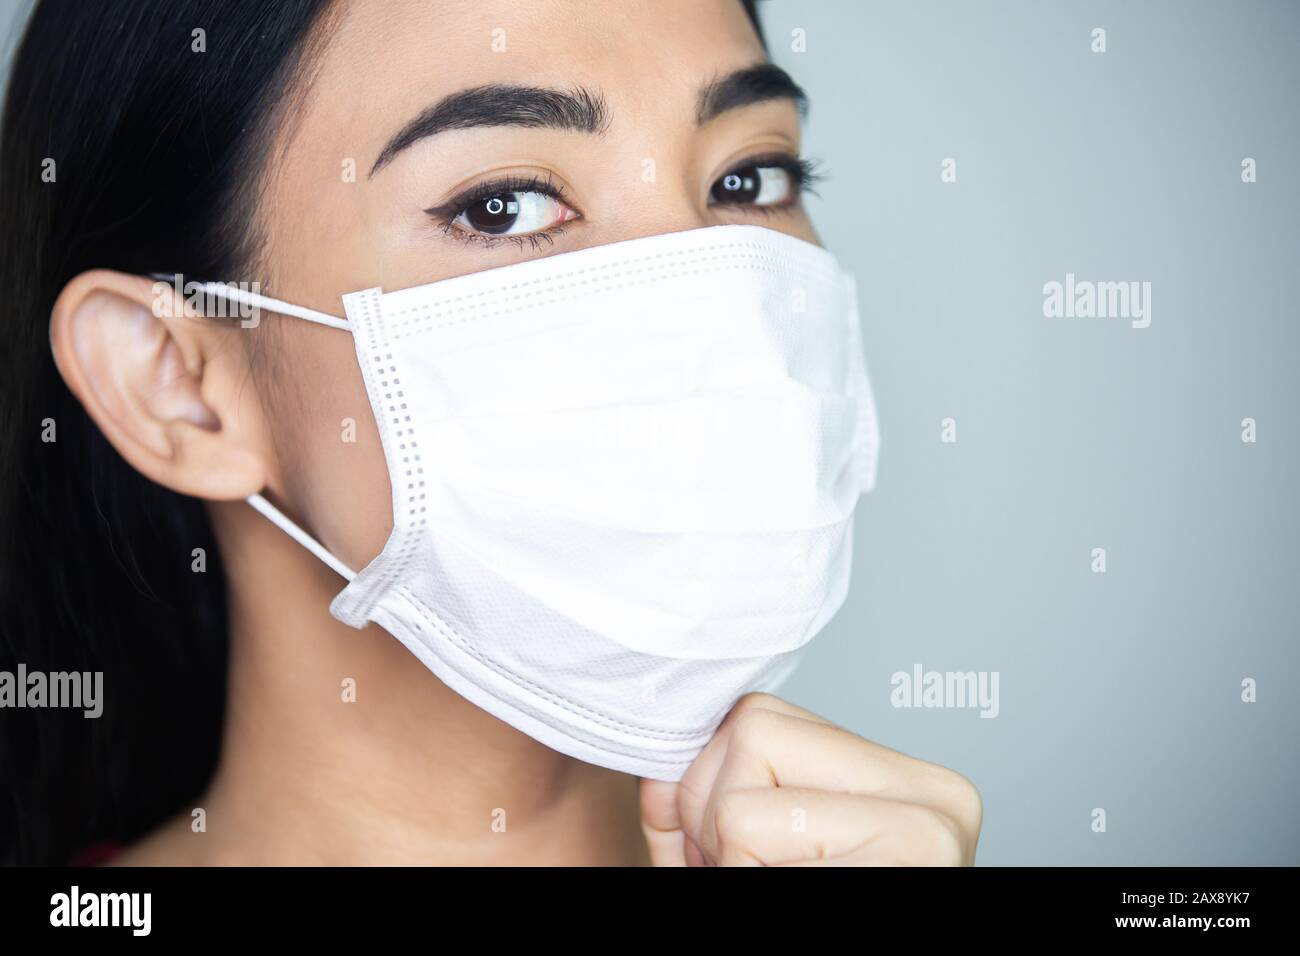 Eine Frau, die eine medizinische Einwegmaske trägt, um ansteckende Viren zu vermeiden. Stockfoto